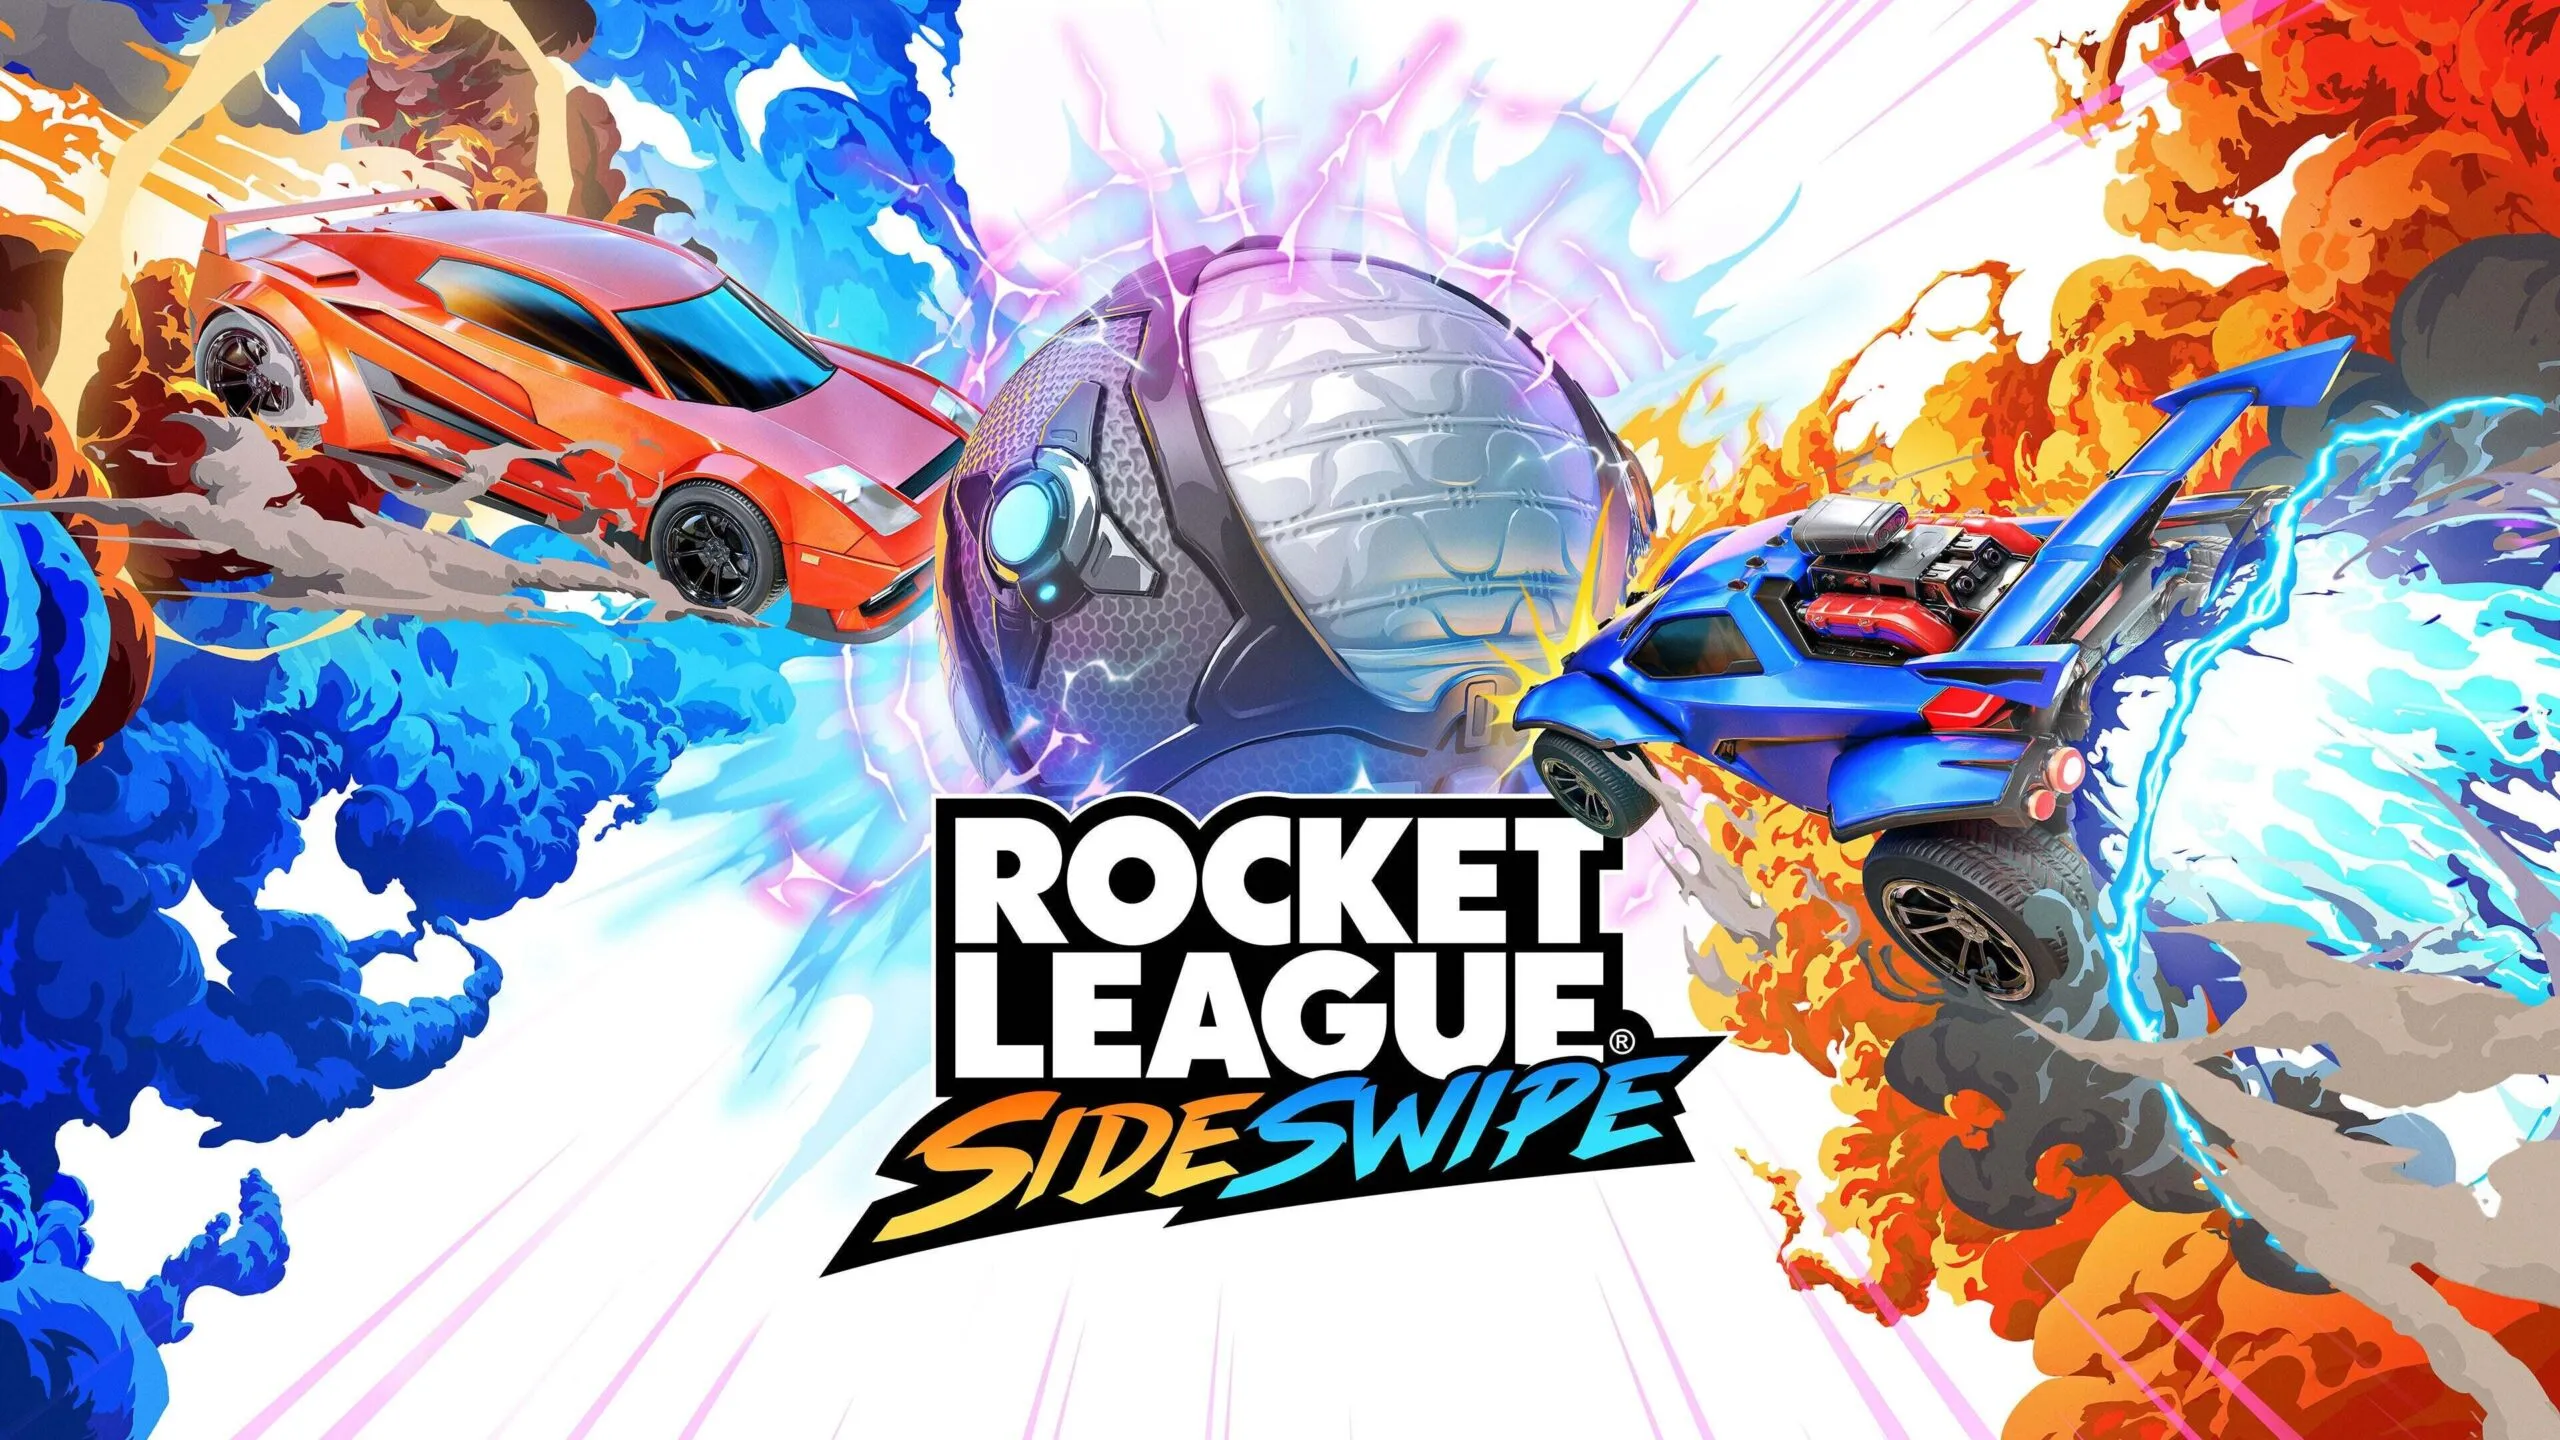 Rocket League Sideswipe review